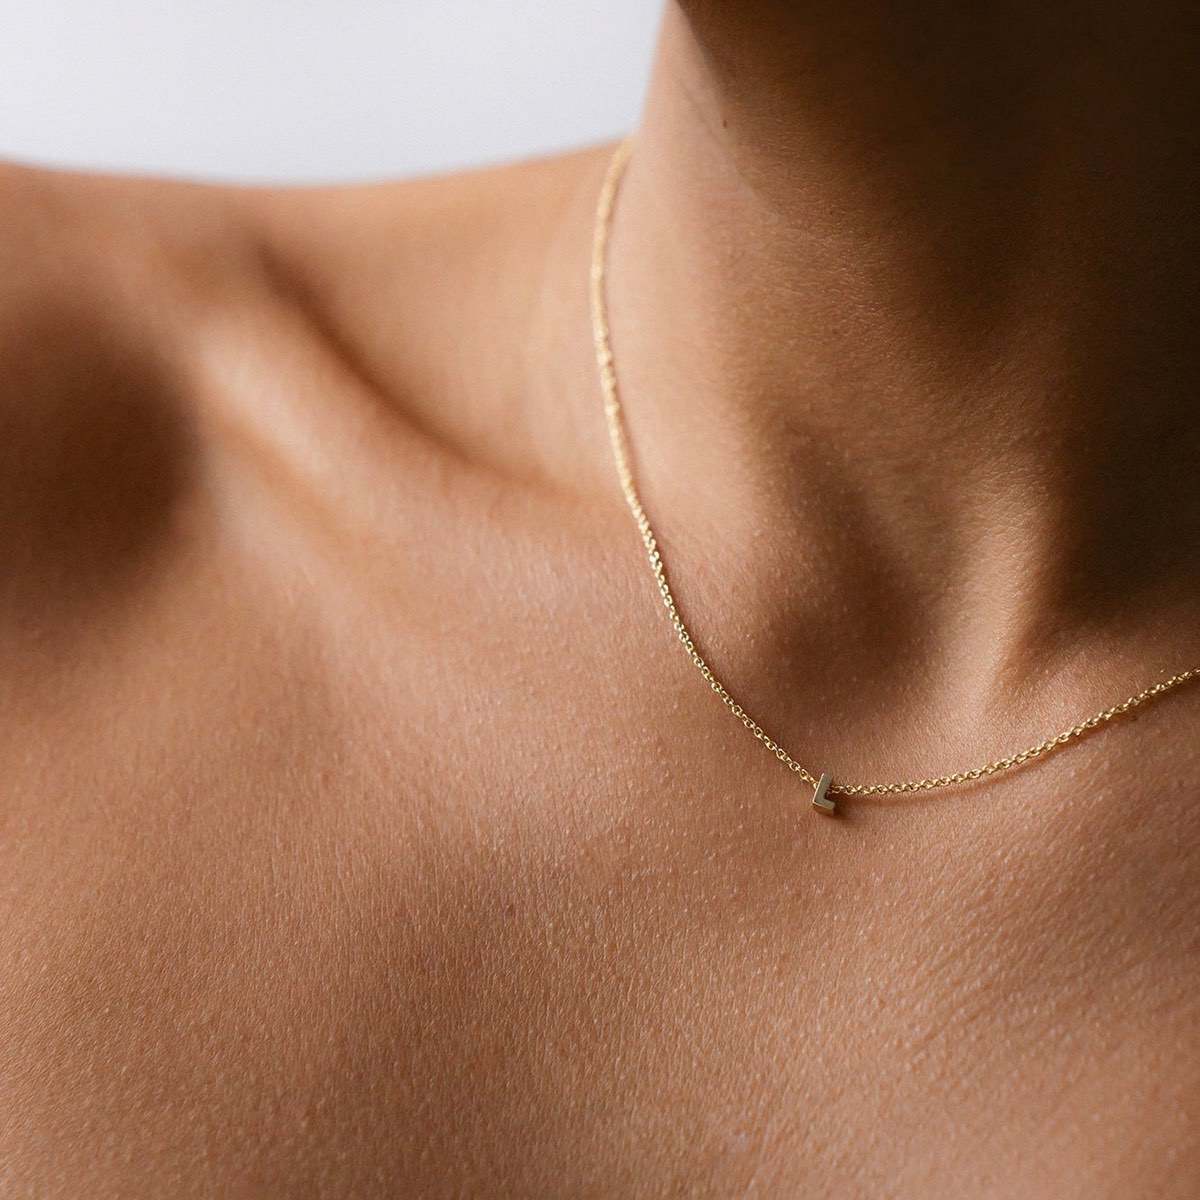 40cm bismark chain necklace (1pc)